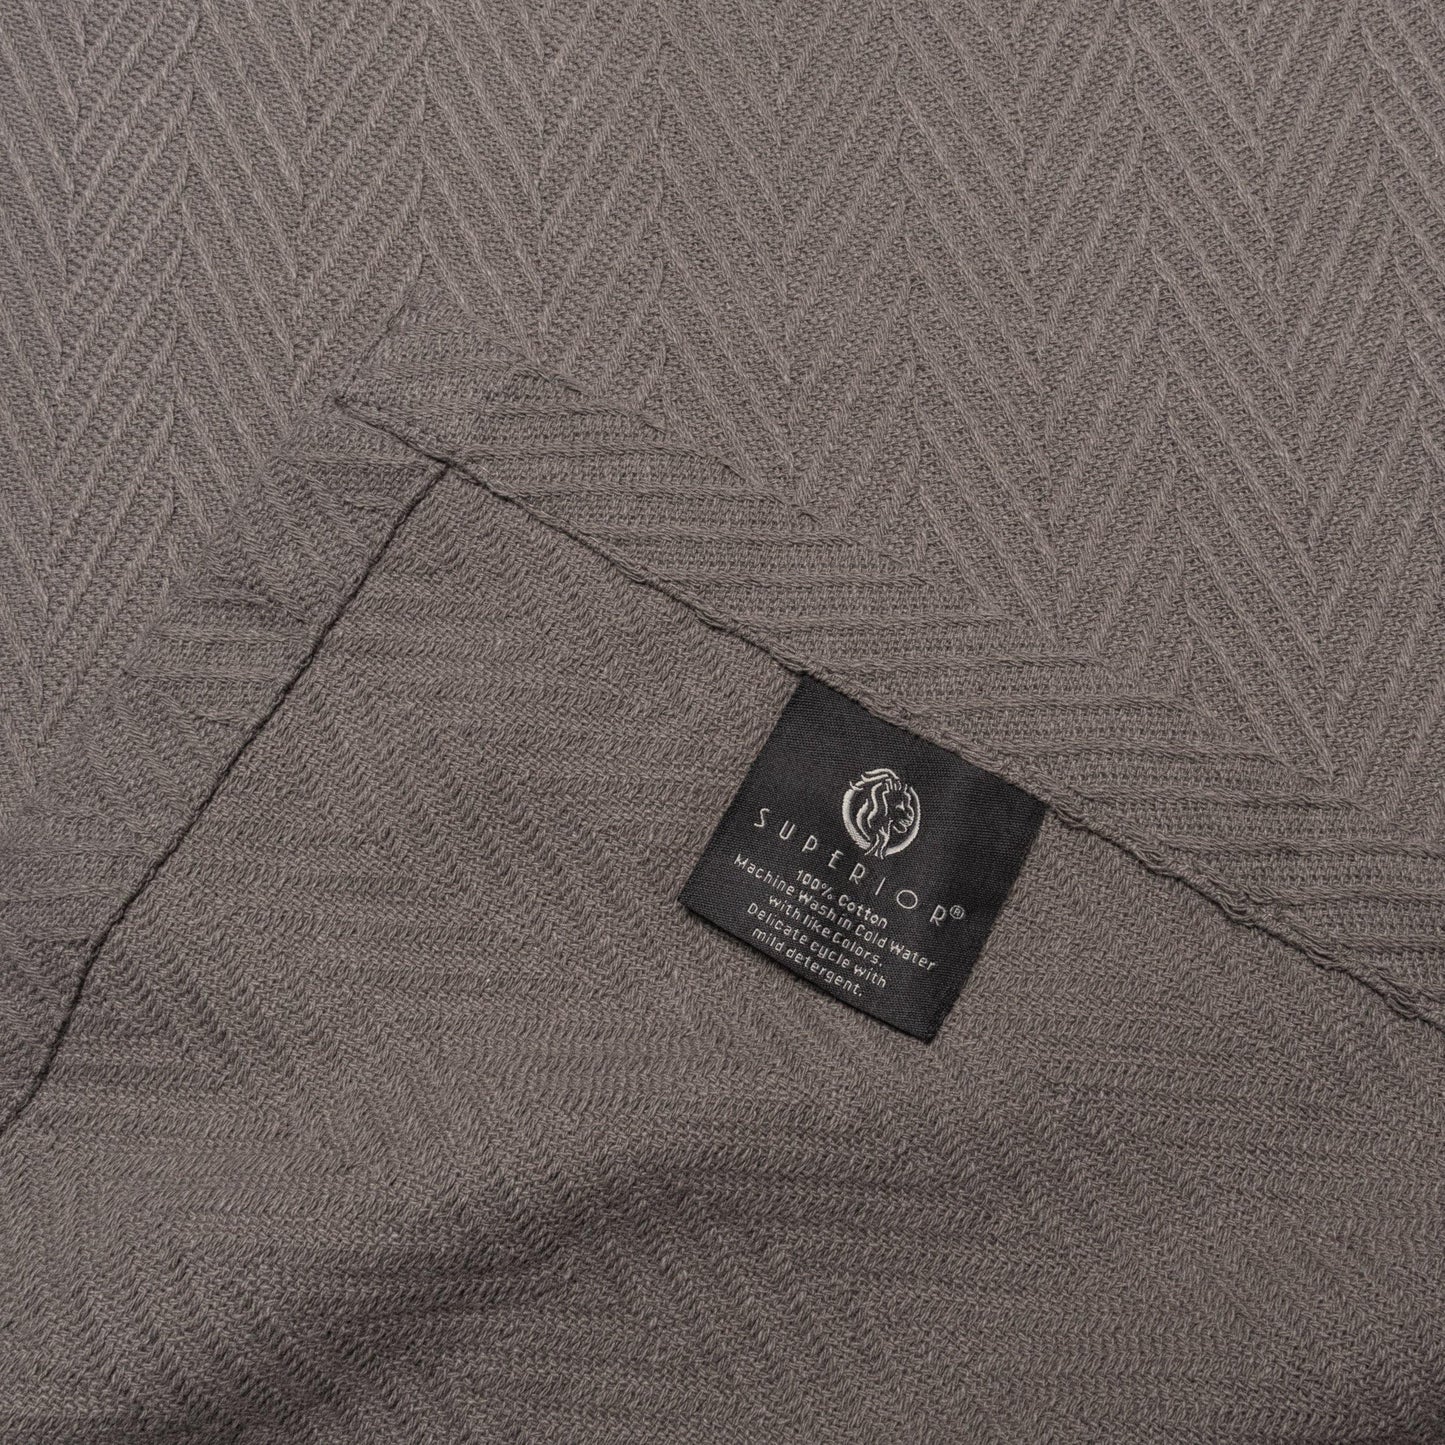 Metro All-Season 100% Cotton Thermal Woven Blanket FredCo